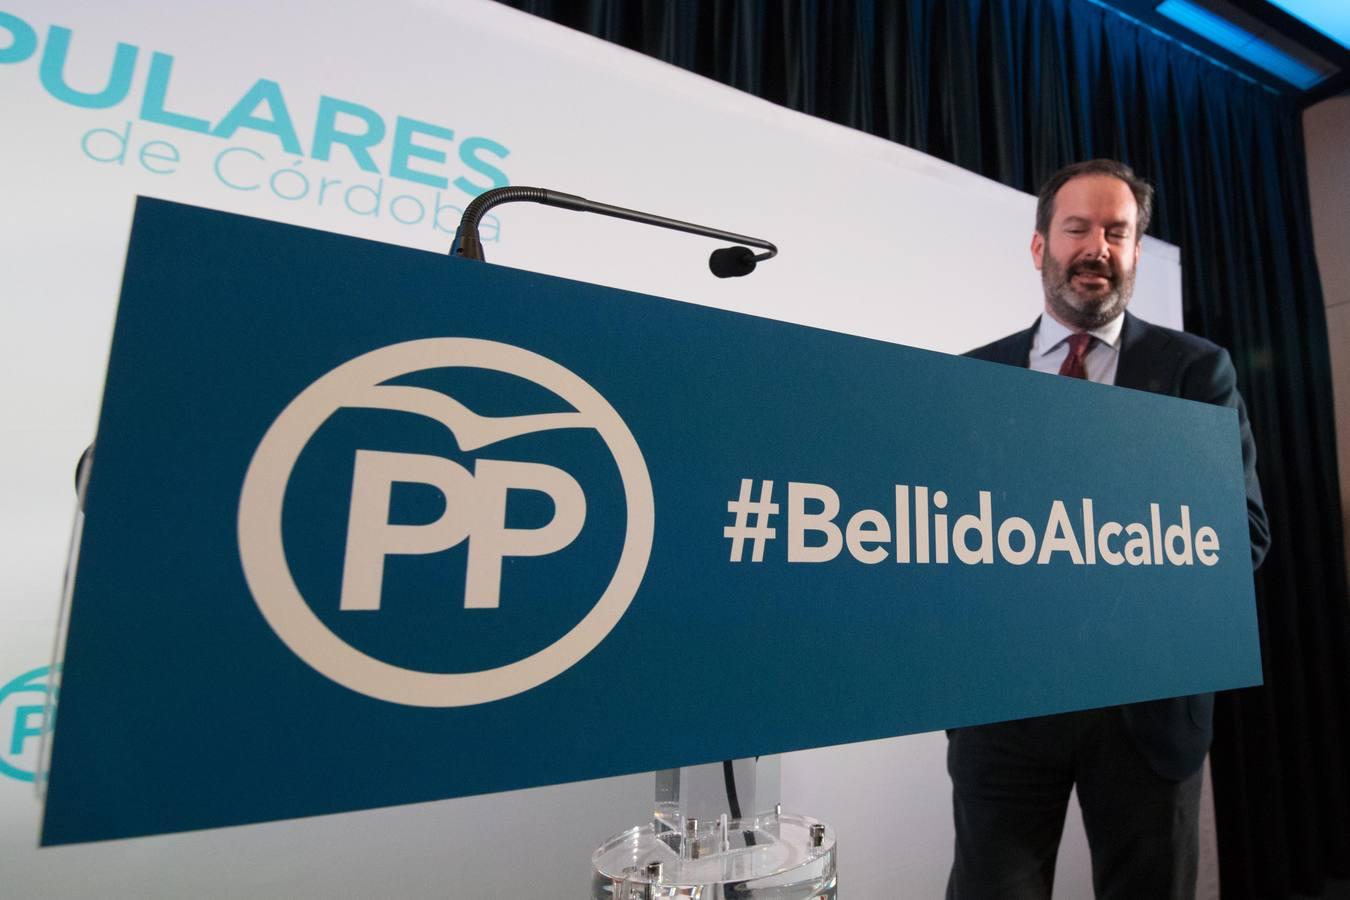 El primer acto de José María Bellido como candidato a la Alcaldía de Córdoba, en imágenes